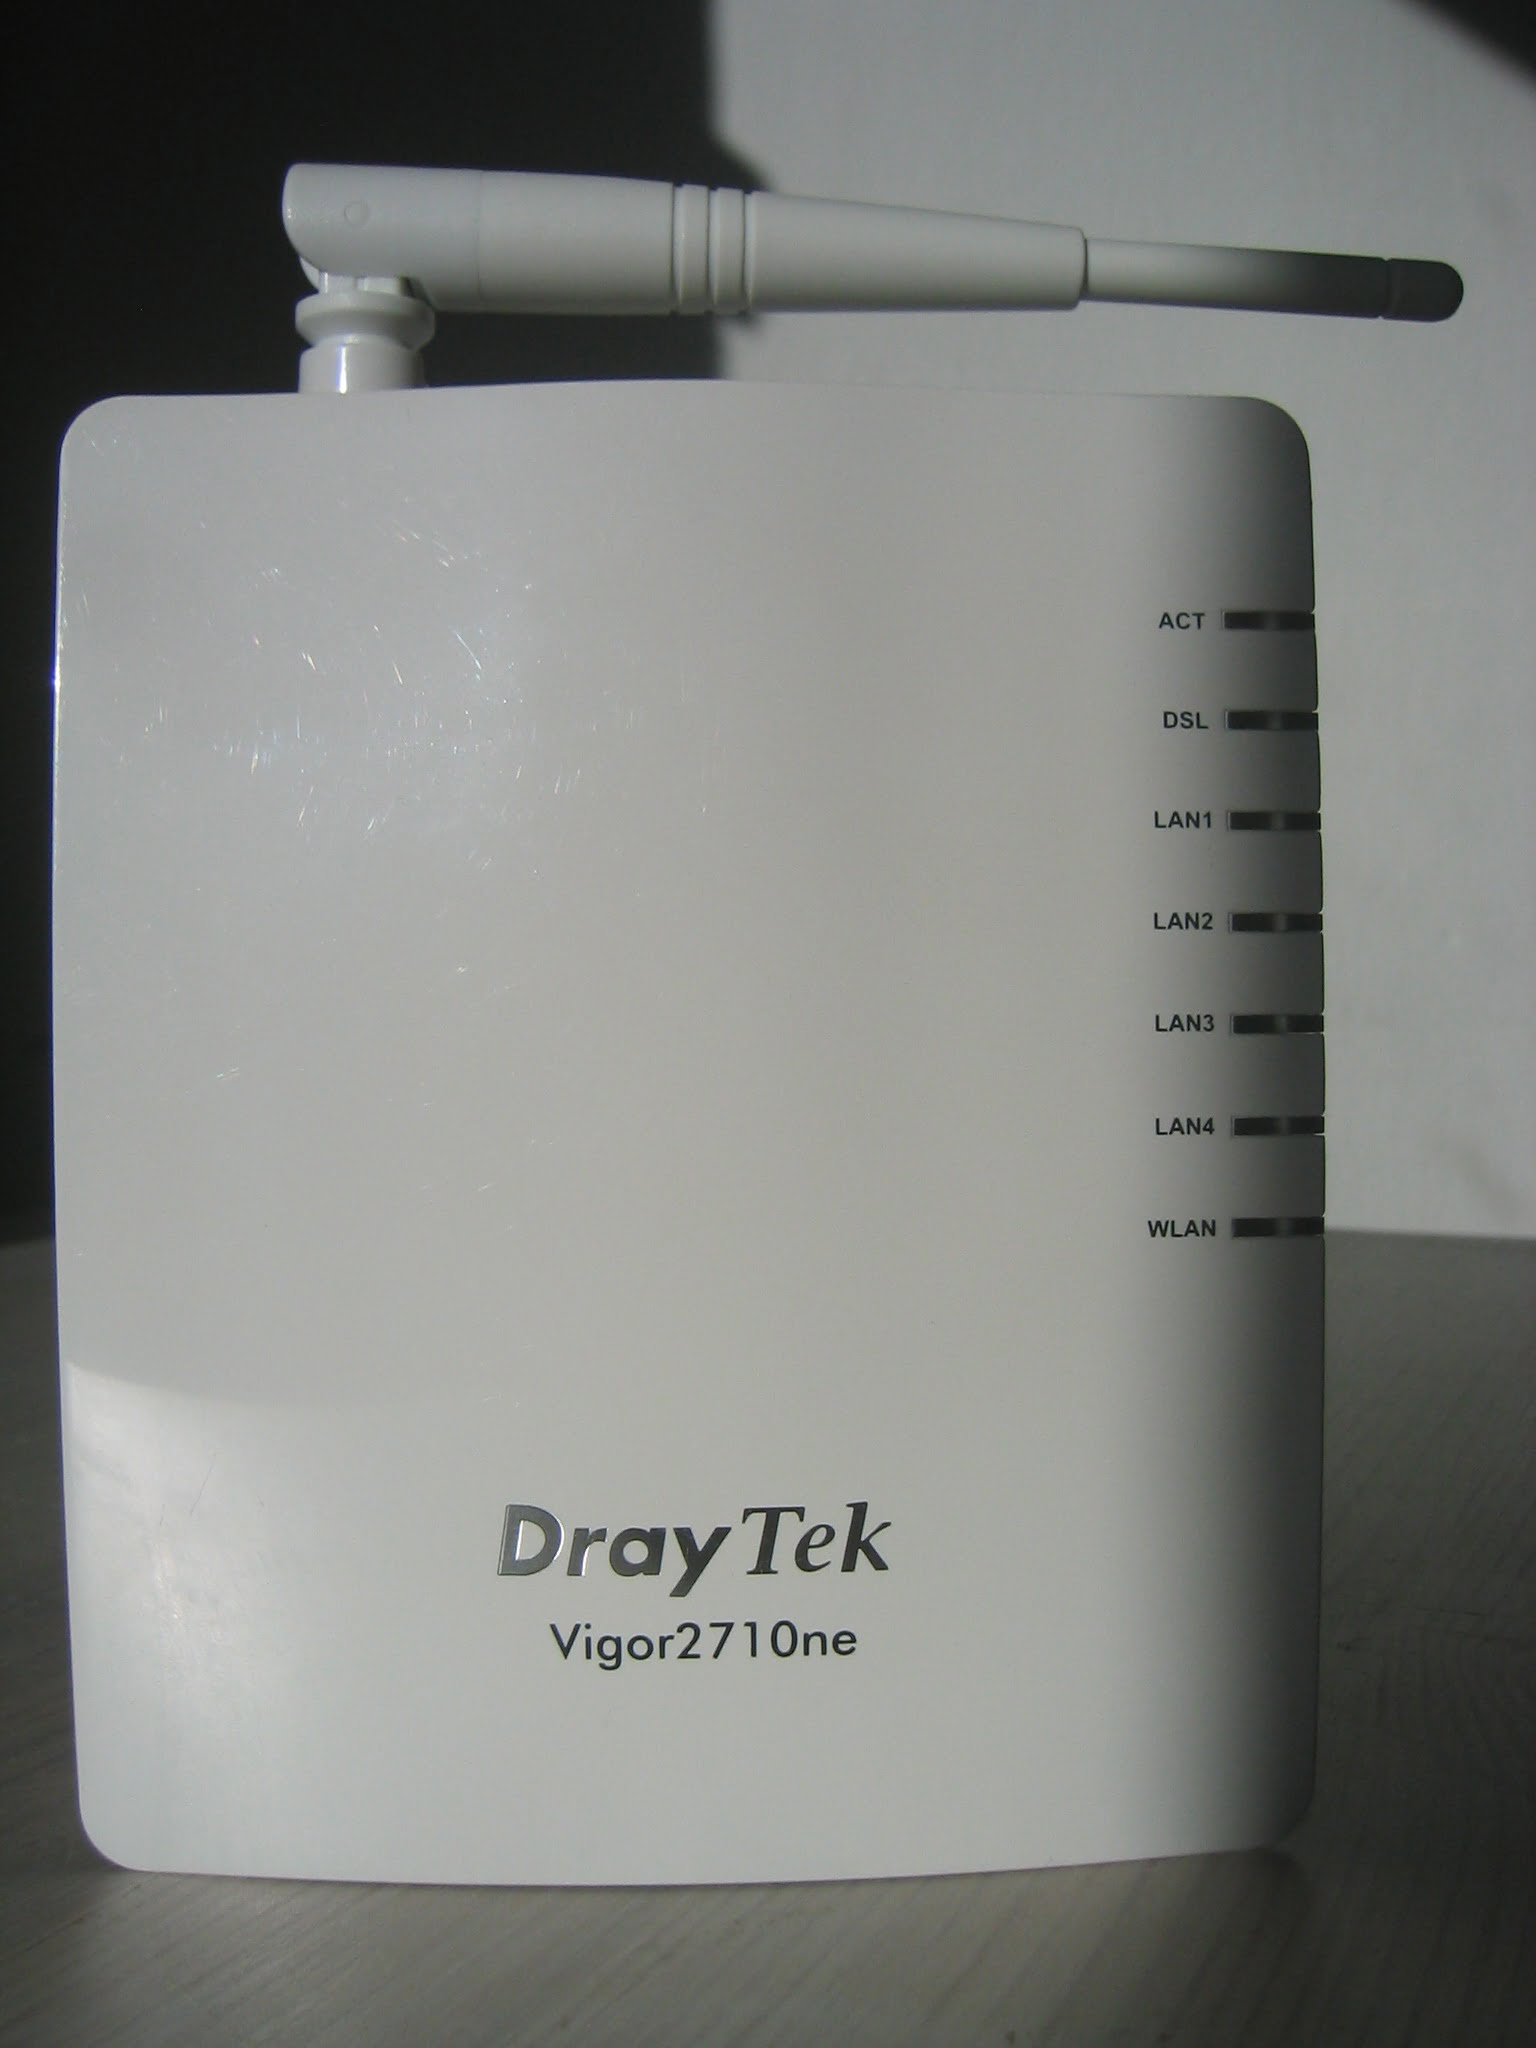 Review: Draytek 2710ne ADSL Modem Router im Test